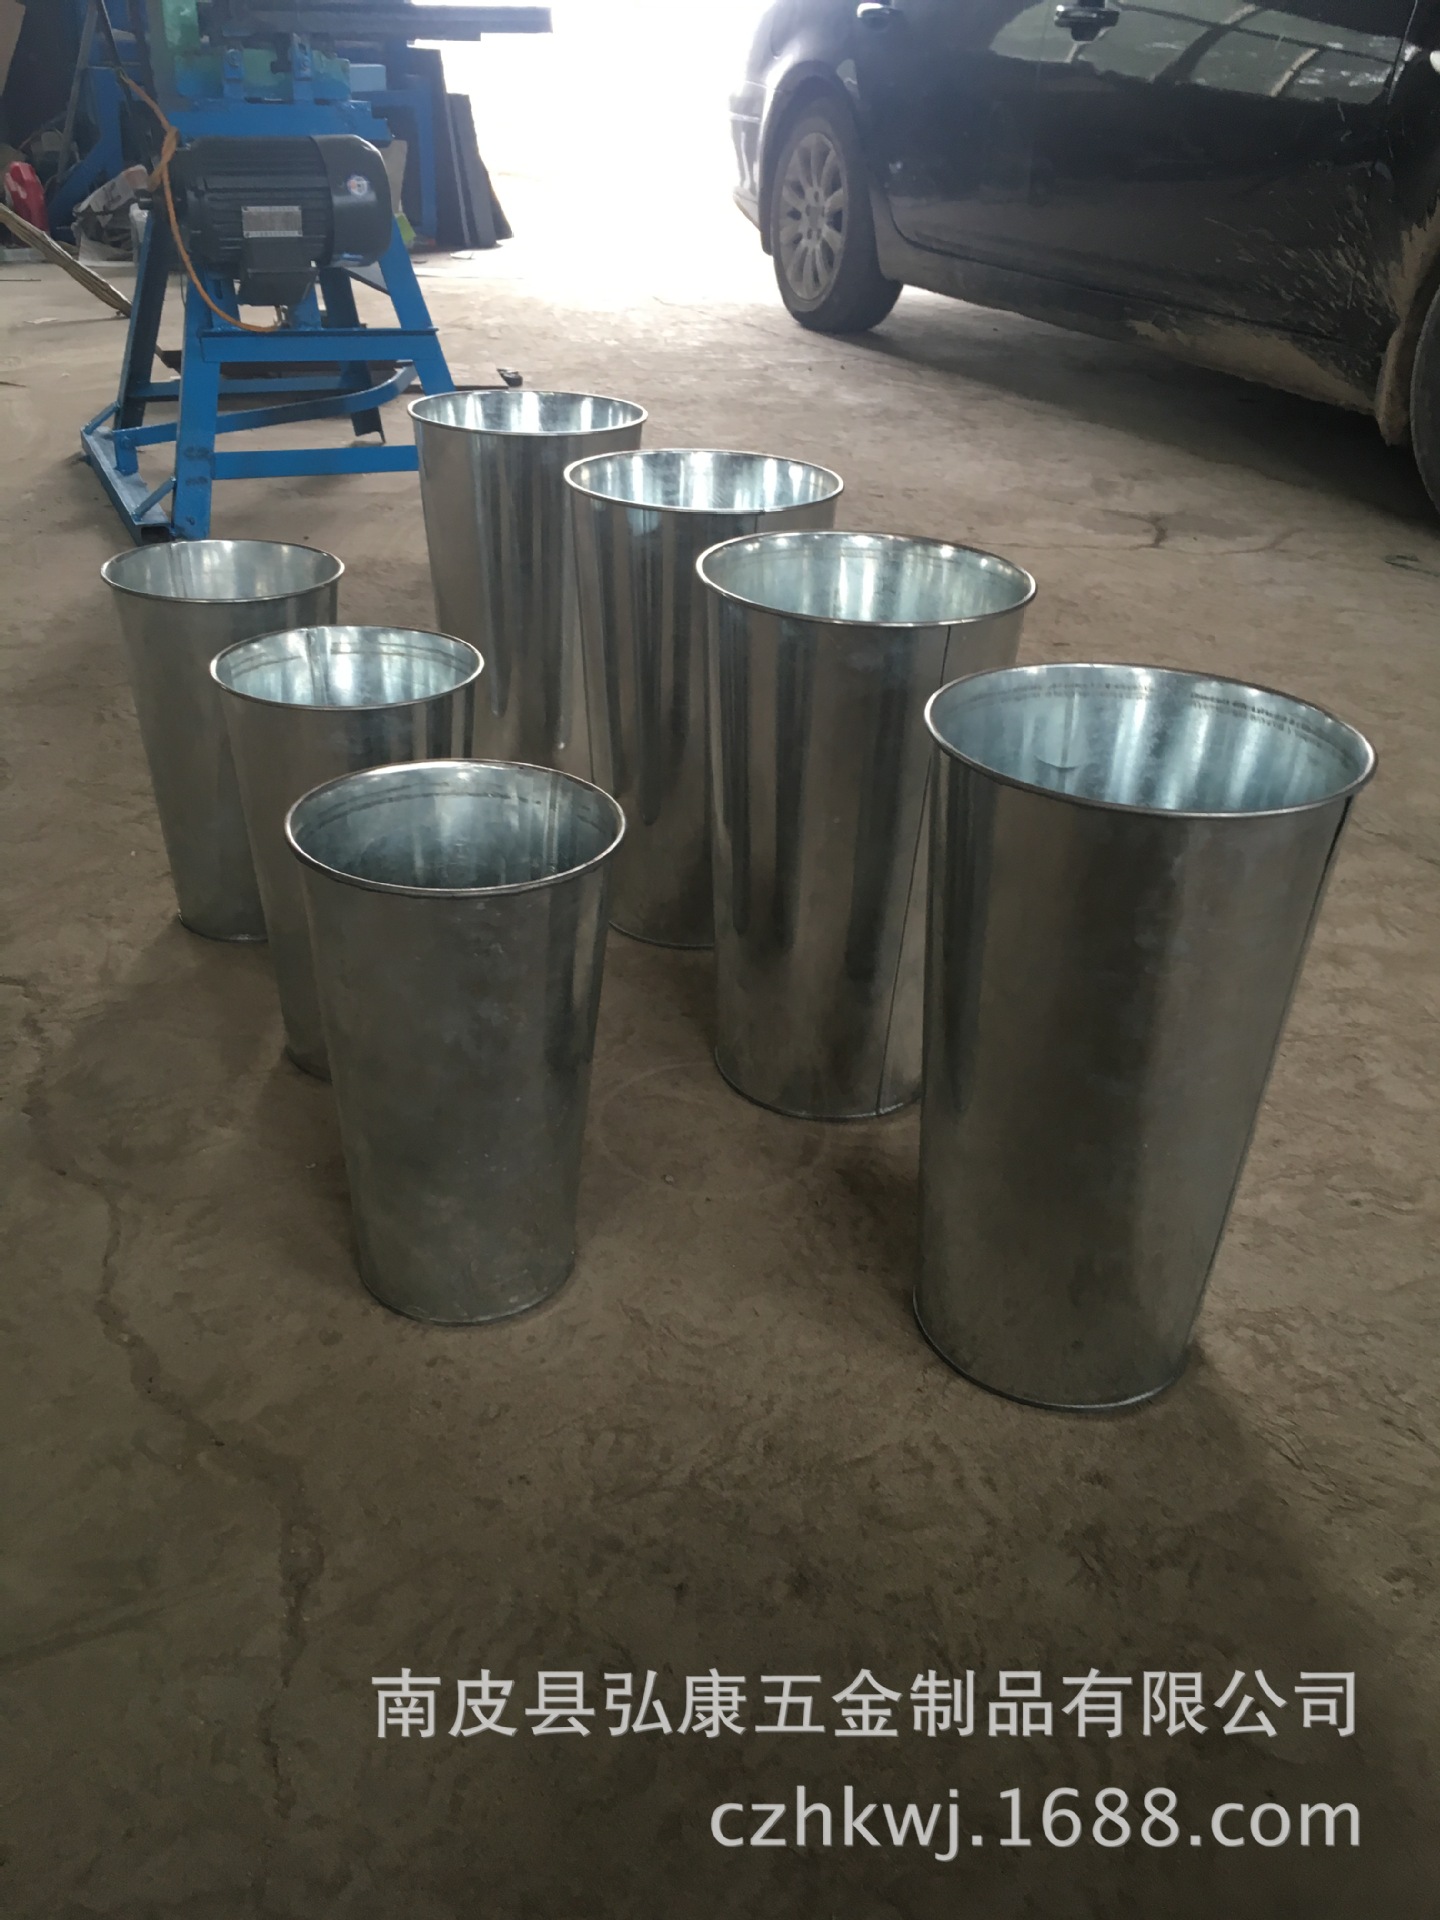 铁桶包装桶生产设备图片